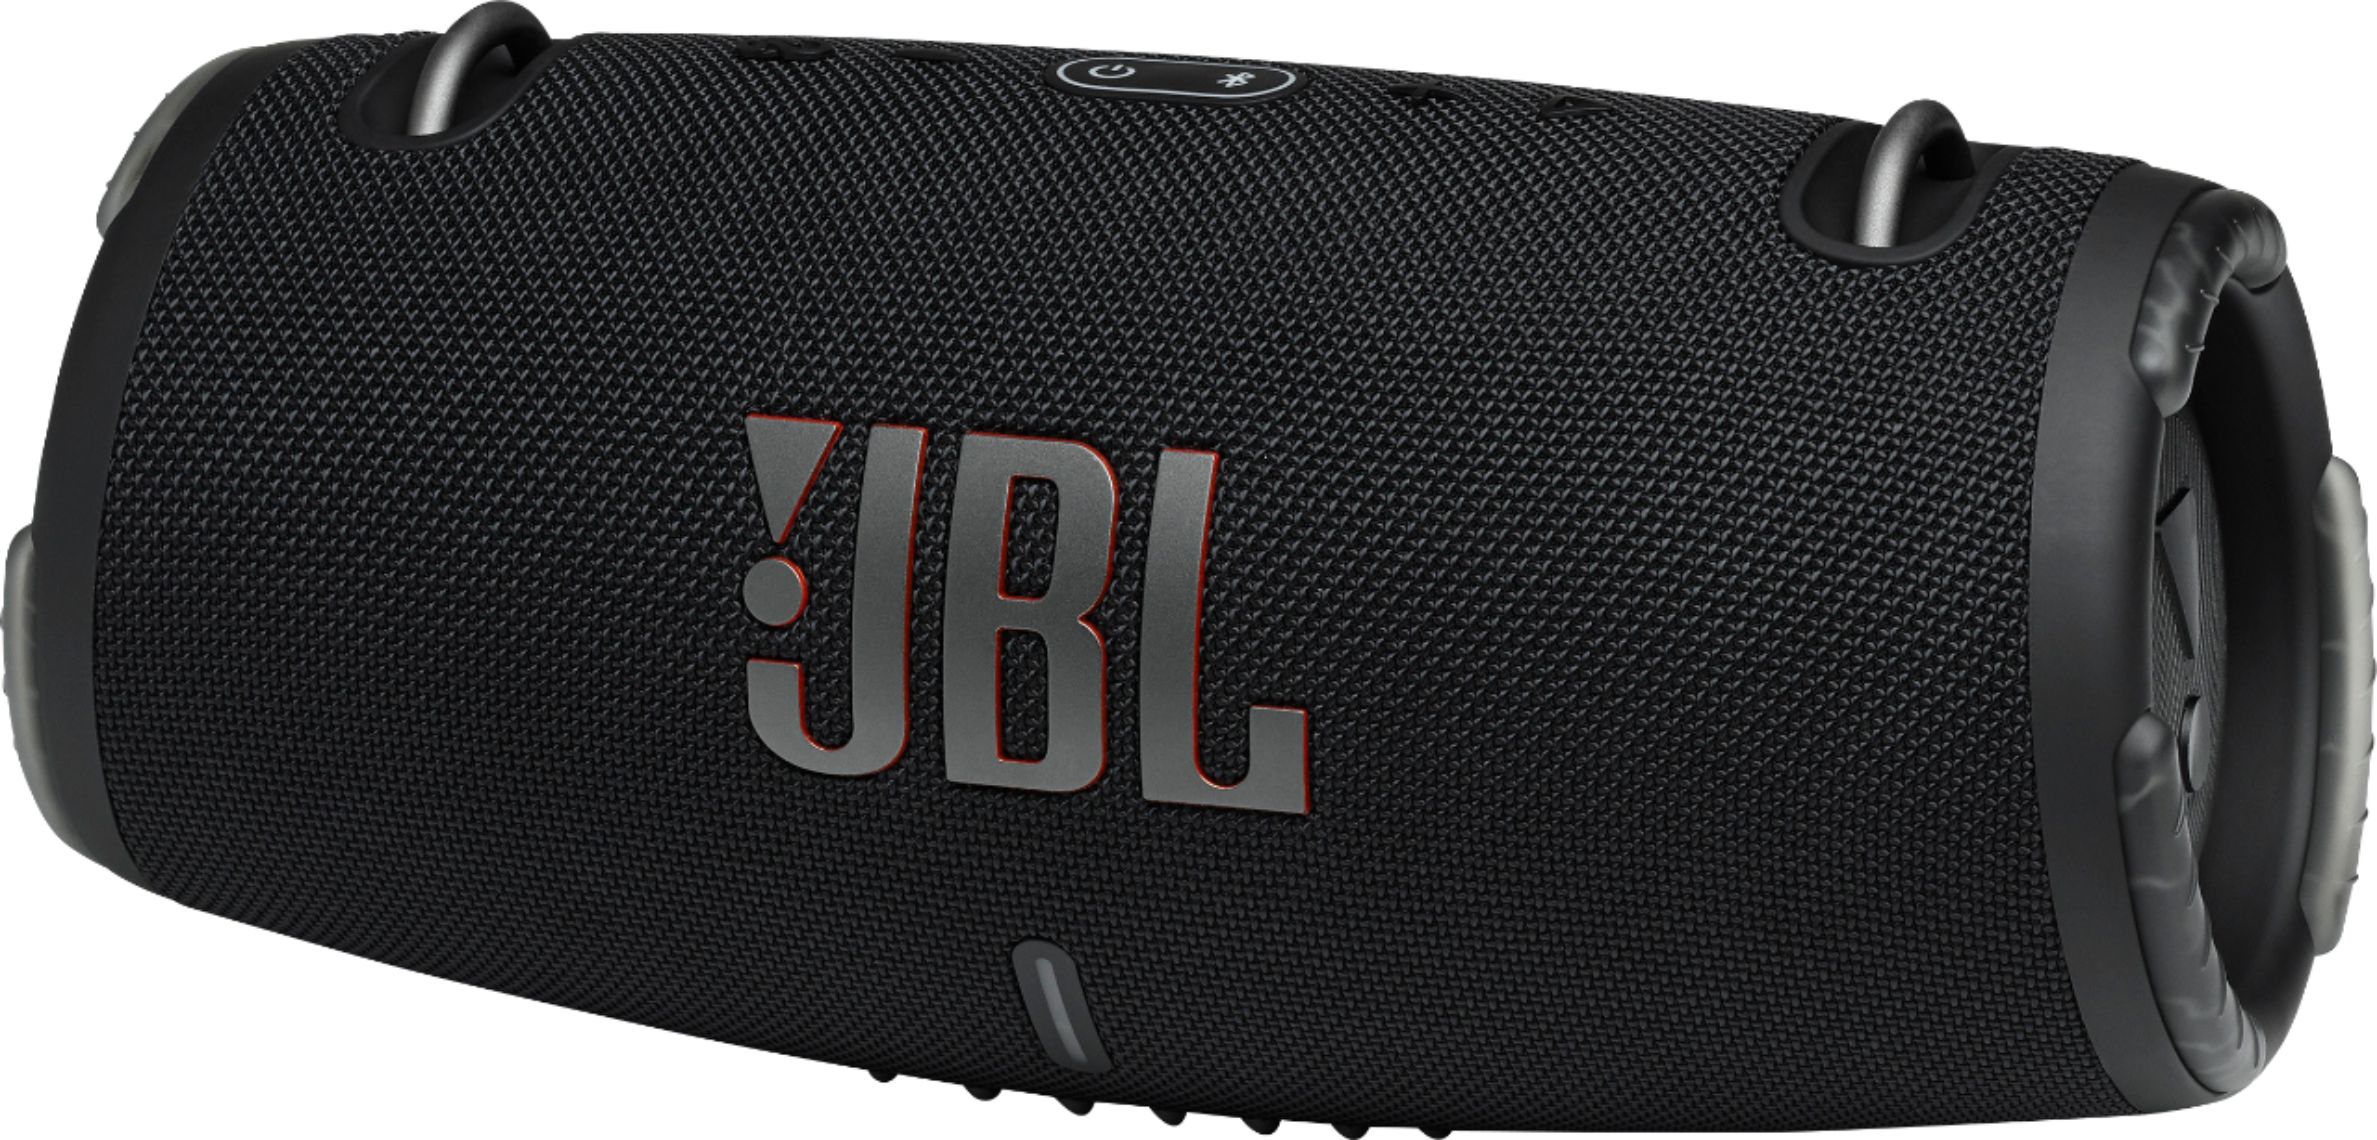 JBL Xtreme 3 Portable Bluetooth Speaker, Waterproof and Dustproof